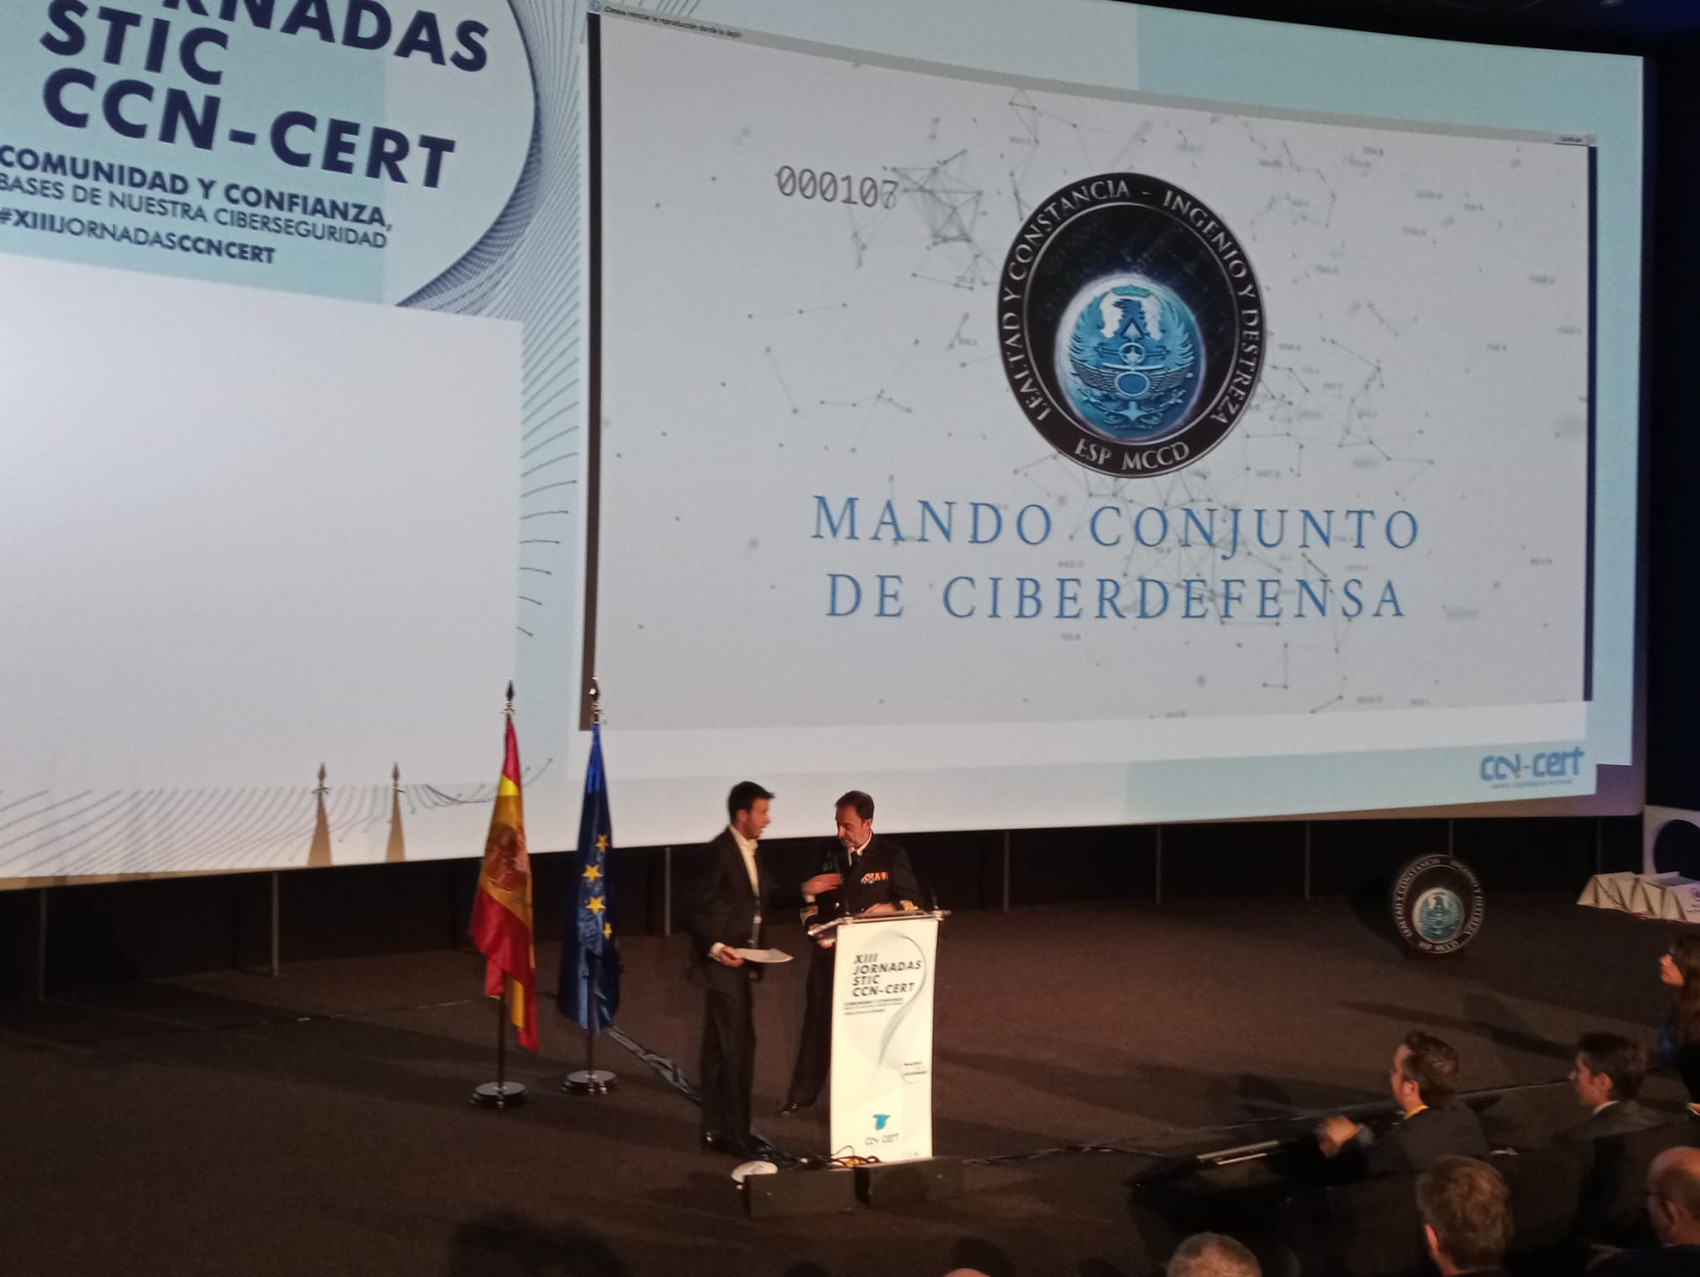 El Mando Conjunto de Ciberdefensa participa en las XIII Jornadas STIC CCN-CERT